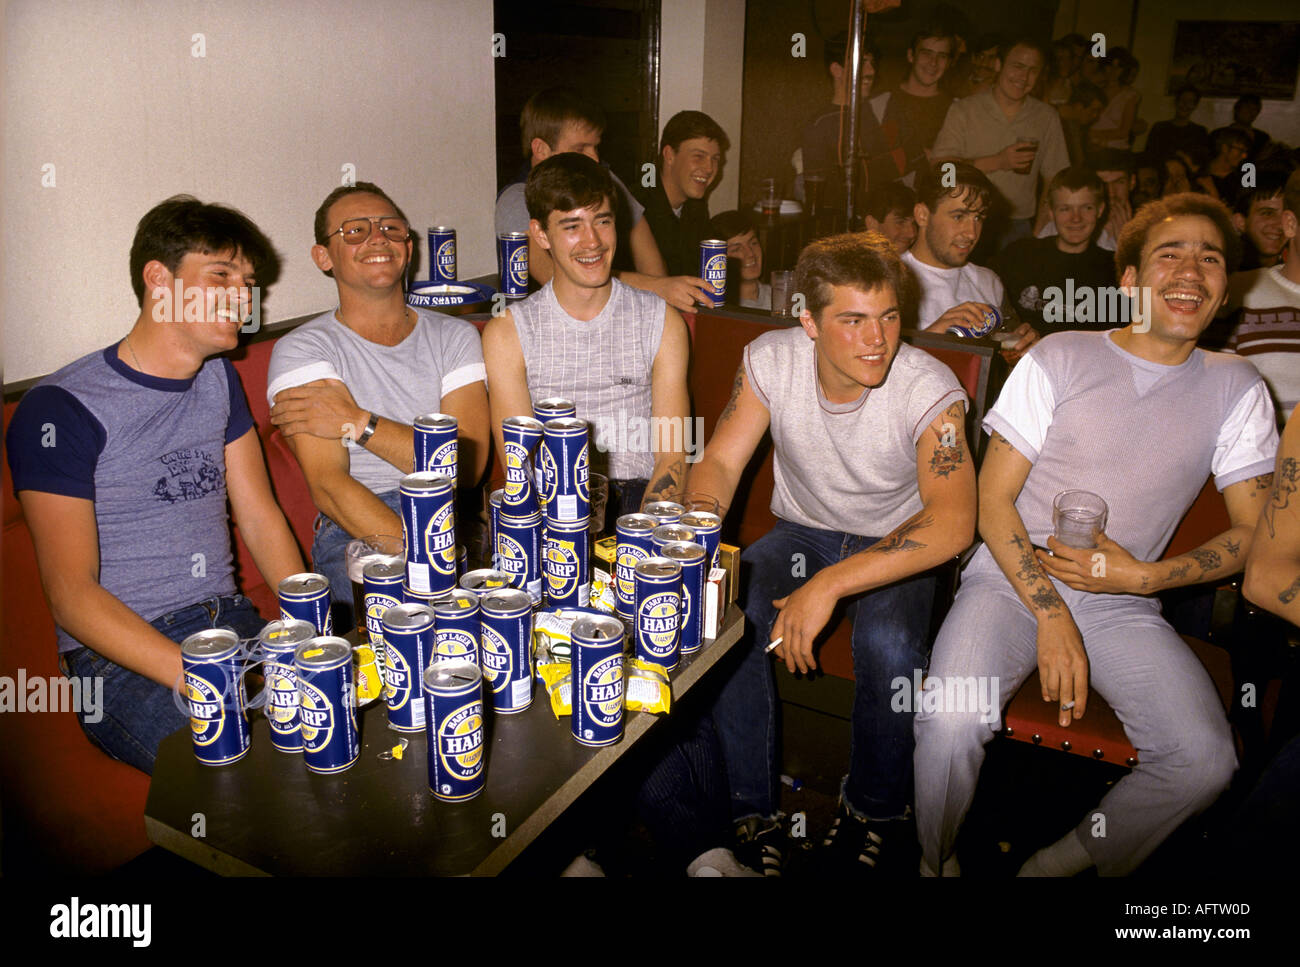 Soldats des troupes britanniques Irlande du Nord, hors service dans le mess boire des canettes de bière plus grande.1980s Royaume-Uni 1984 HOMER SYKES Banque D'Images